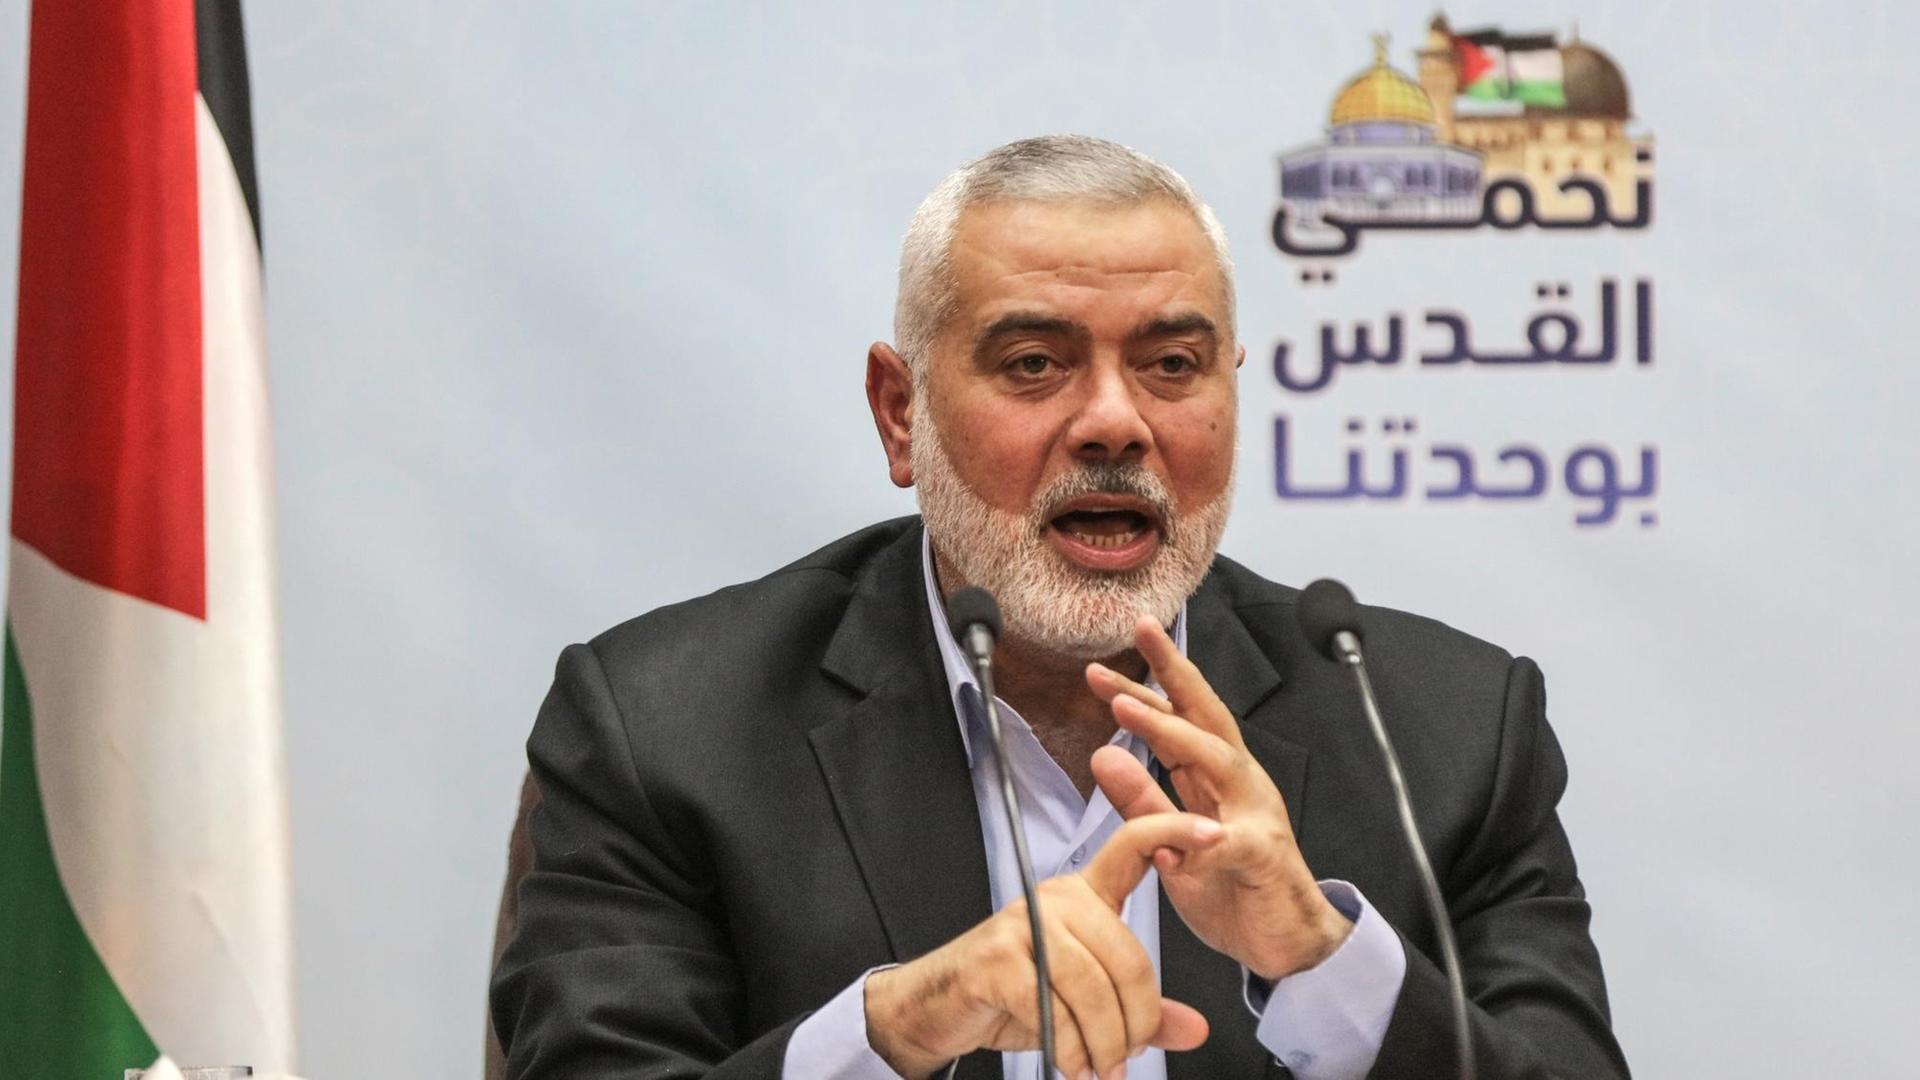 Ismail Hanija, Chef der radikalislamischen Hamas, gestikuliert.